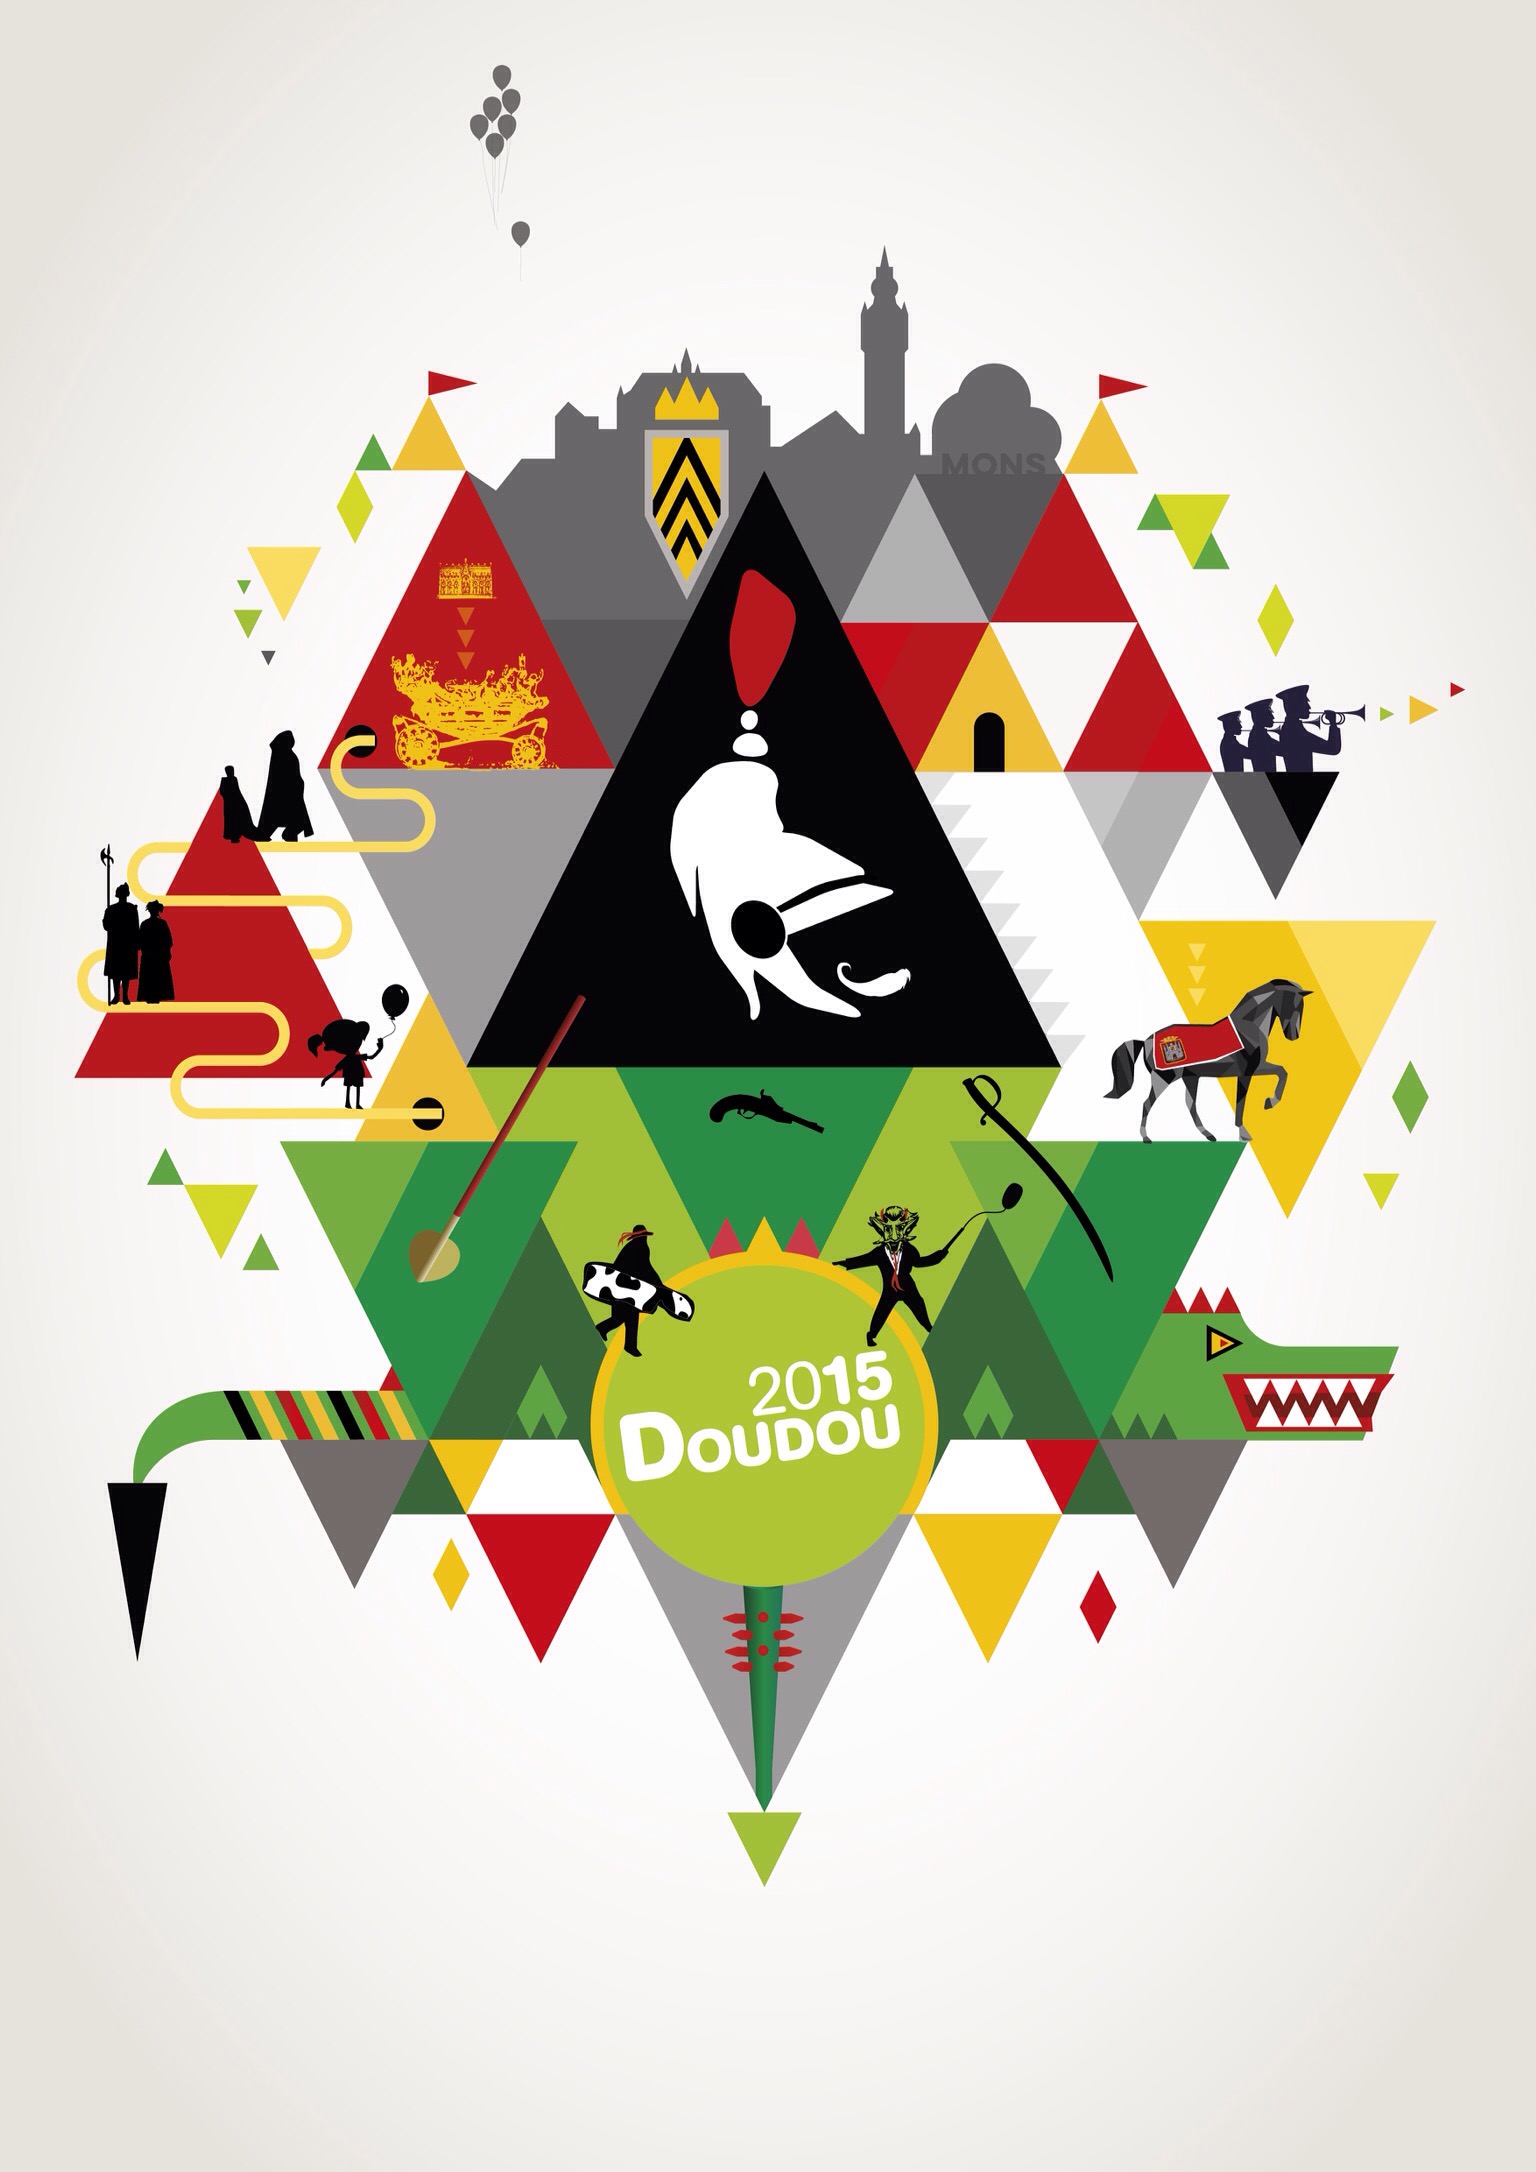 Concours Doudou illustré 2015